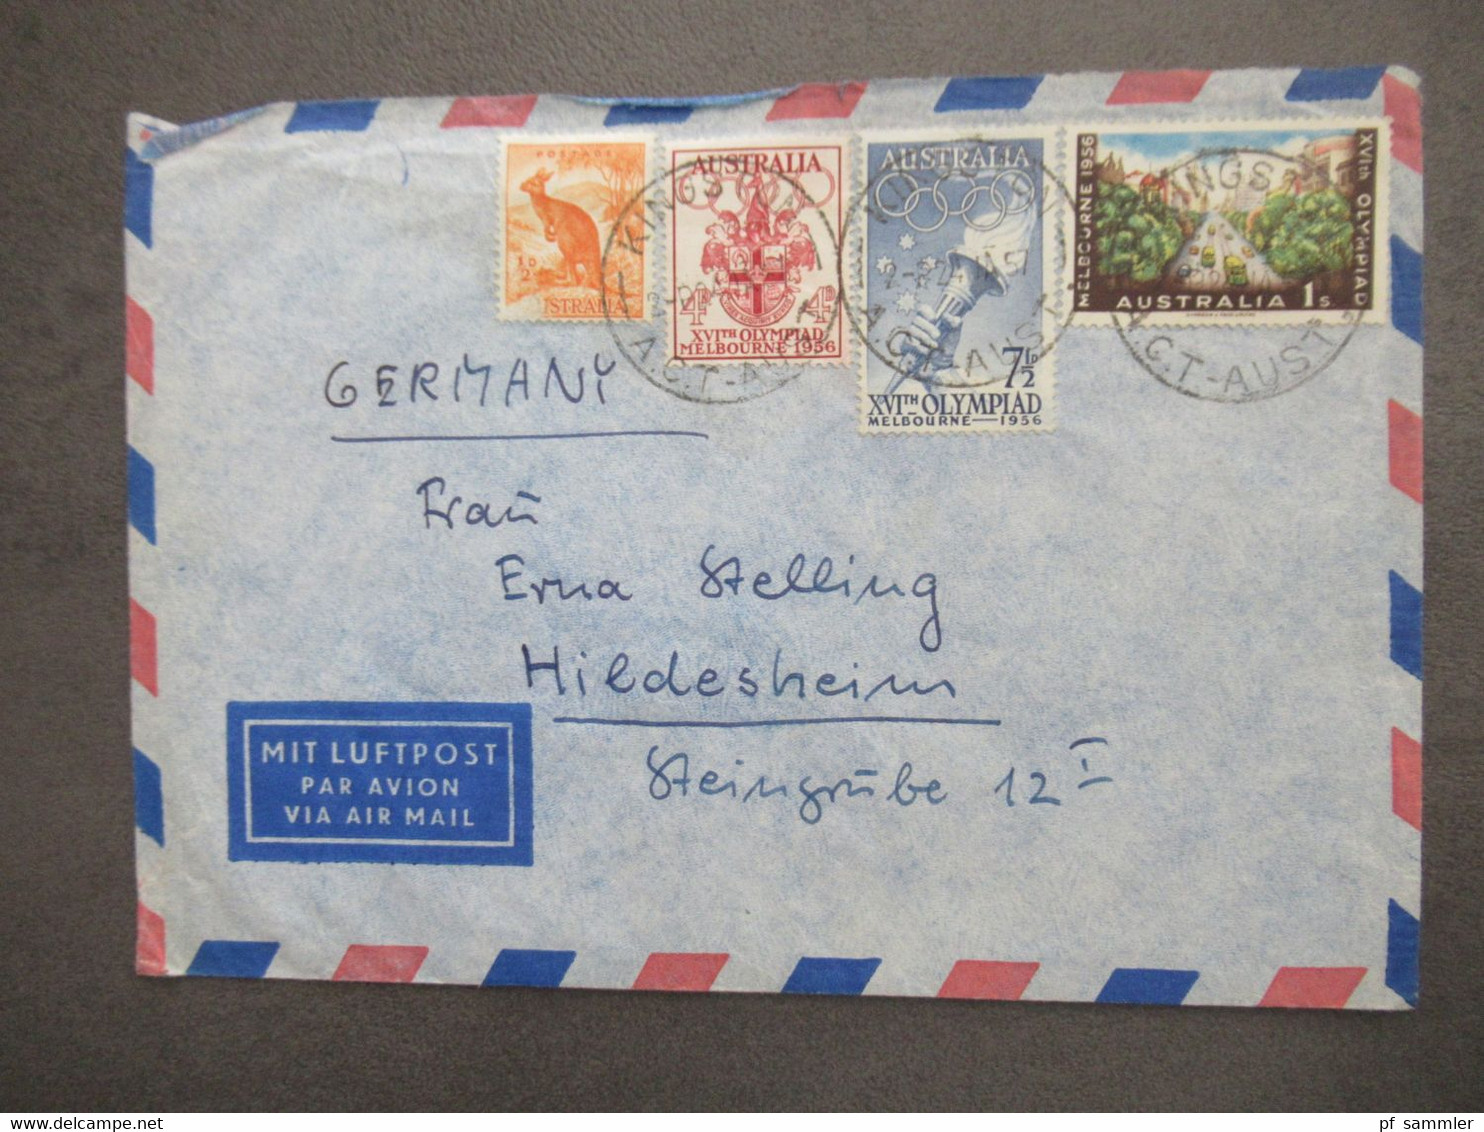 Australien Marken Von 1956 Mit Luftpost Air Mail Kingston - Hildesheim Aulandsbrief - Storia Postale